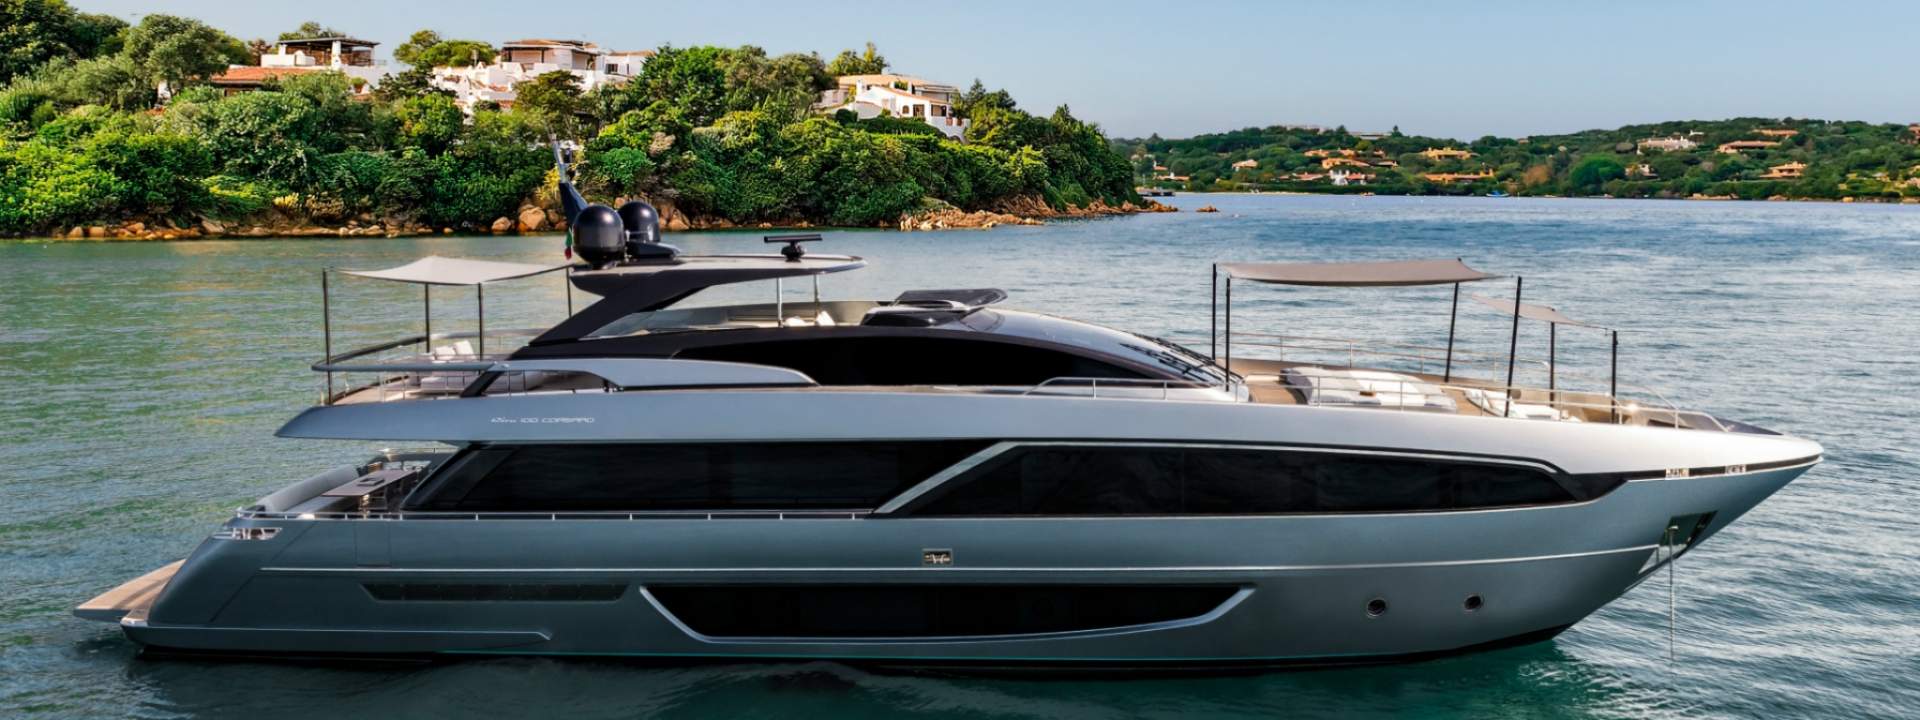 Luxury Yacht Riva 100 Corsaro